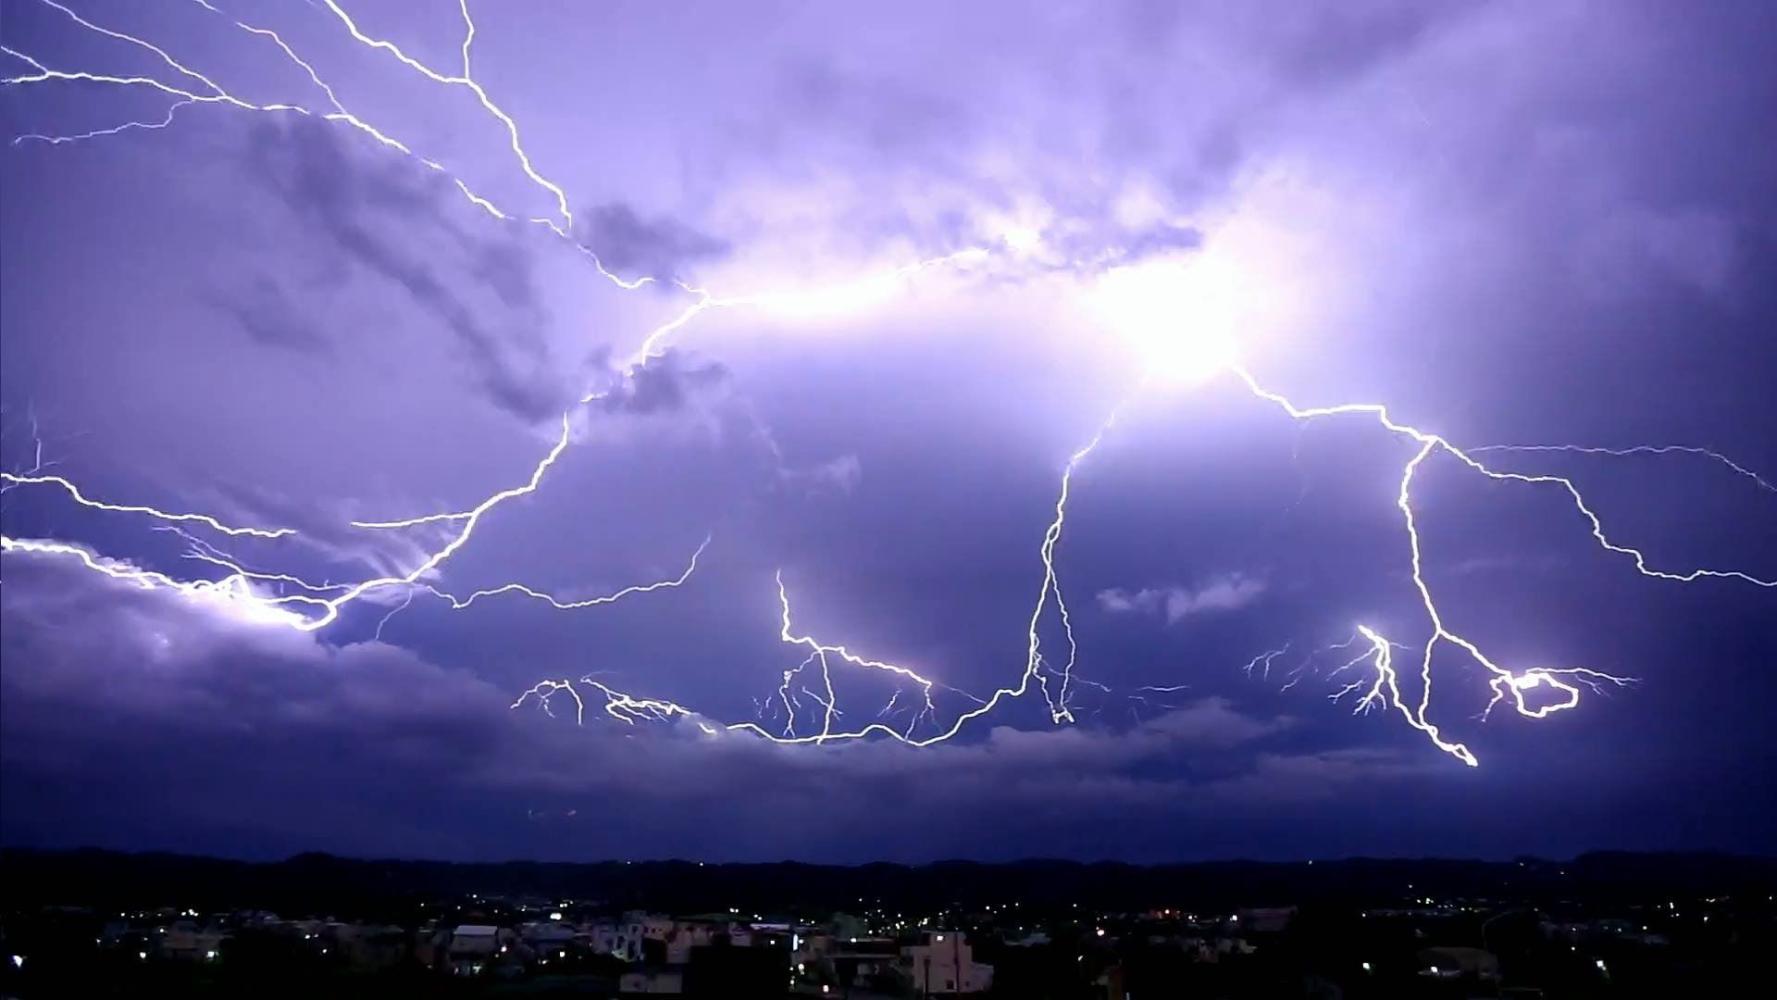 雨与闪电的风暴背景在多云天气 库存图片. 图片 包括有 闪电, 多雨, 闪光, 视图, 例证, 暴雨, 降雨量 - 143803855